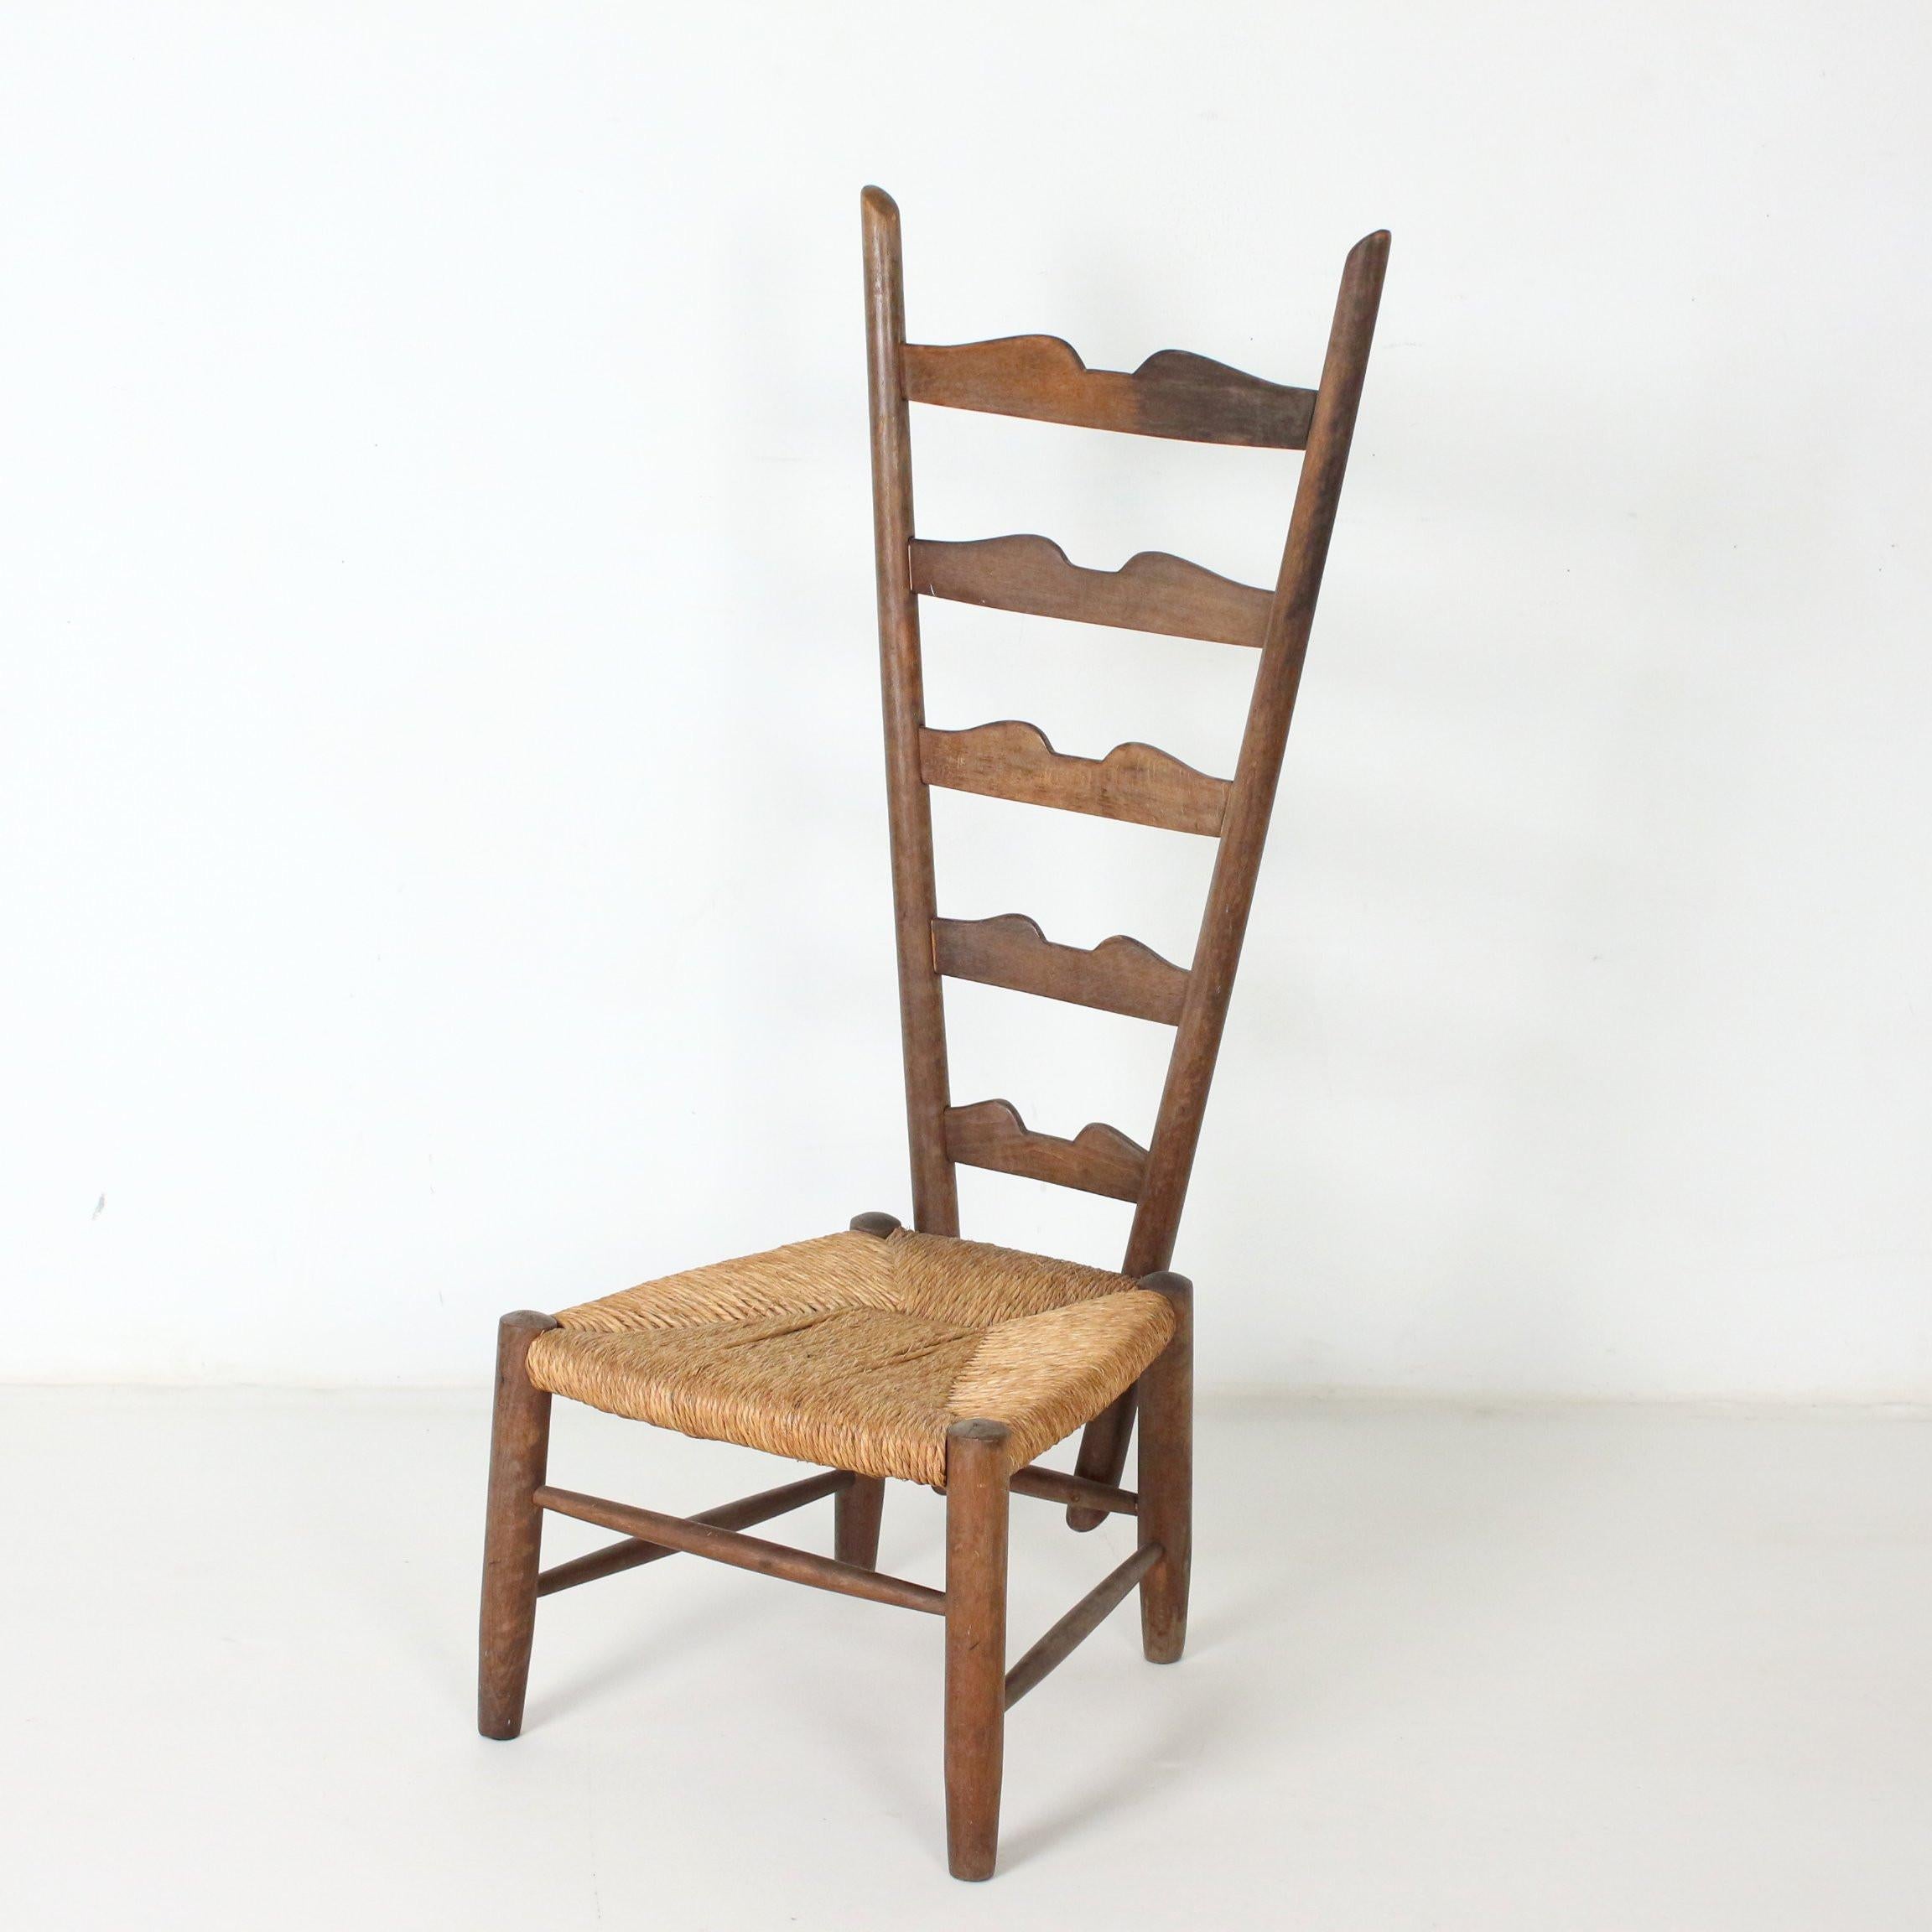 Chaise conçue par Gio Ponti avec un haut dossier en échelle typique du style de Ponti. Cadre en bois foncé et teinté avec siège en osier de jonc. Fabriqué pour Casa E Giardino, Milan, Italie 1939.